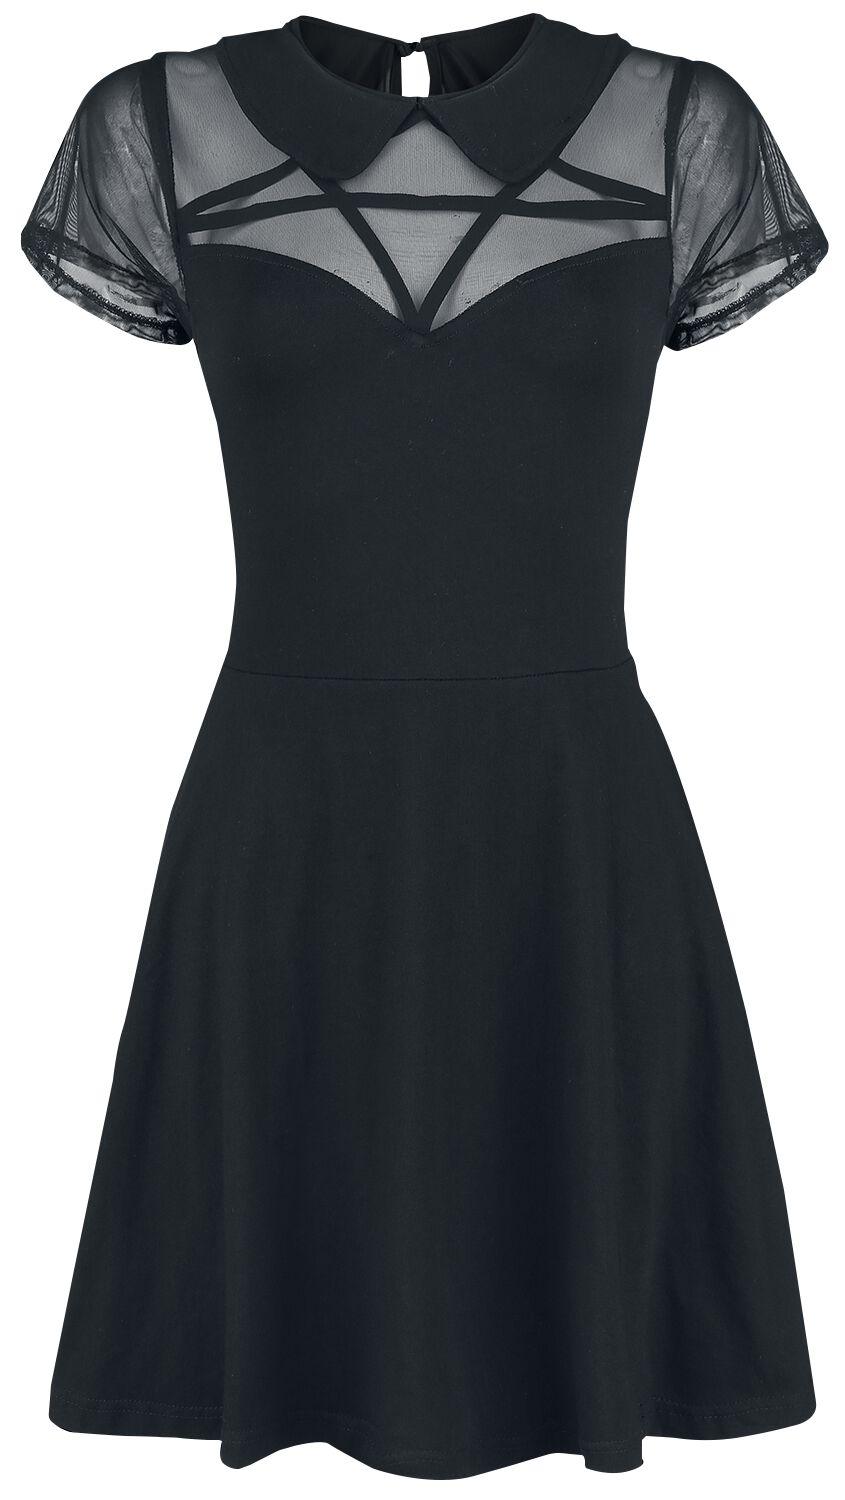 Heartless - Gothic Kurzes Kleid - Hex Wednesday Dress - S bis XL - für Damen - Größe S - schwarz